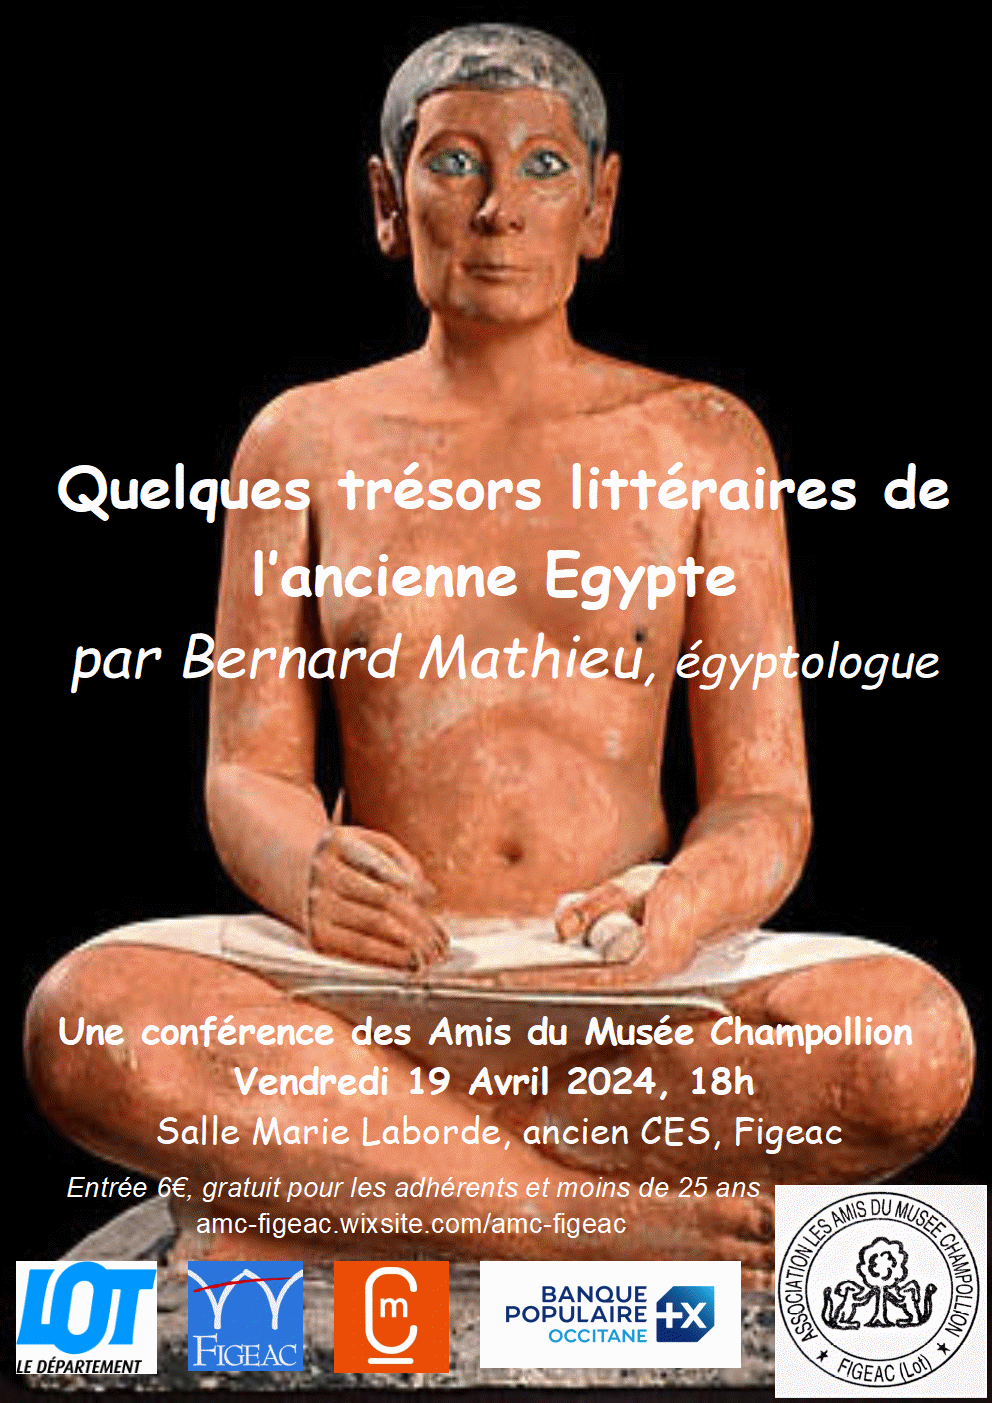 Conférence "Quelques trésors littéraires de l'ancienne l'Egypte" par Bernard Mathieu